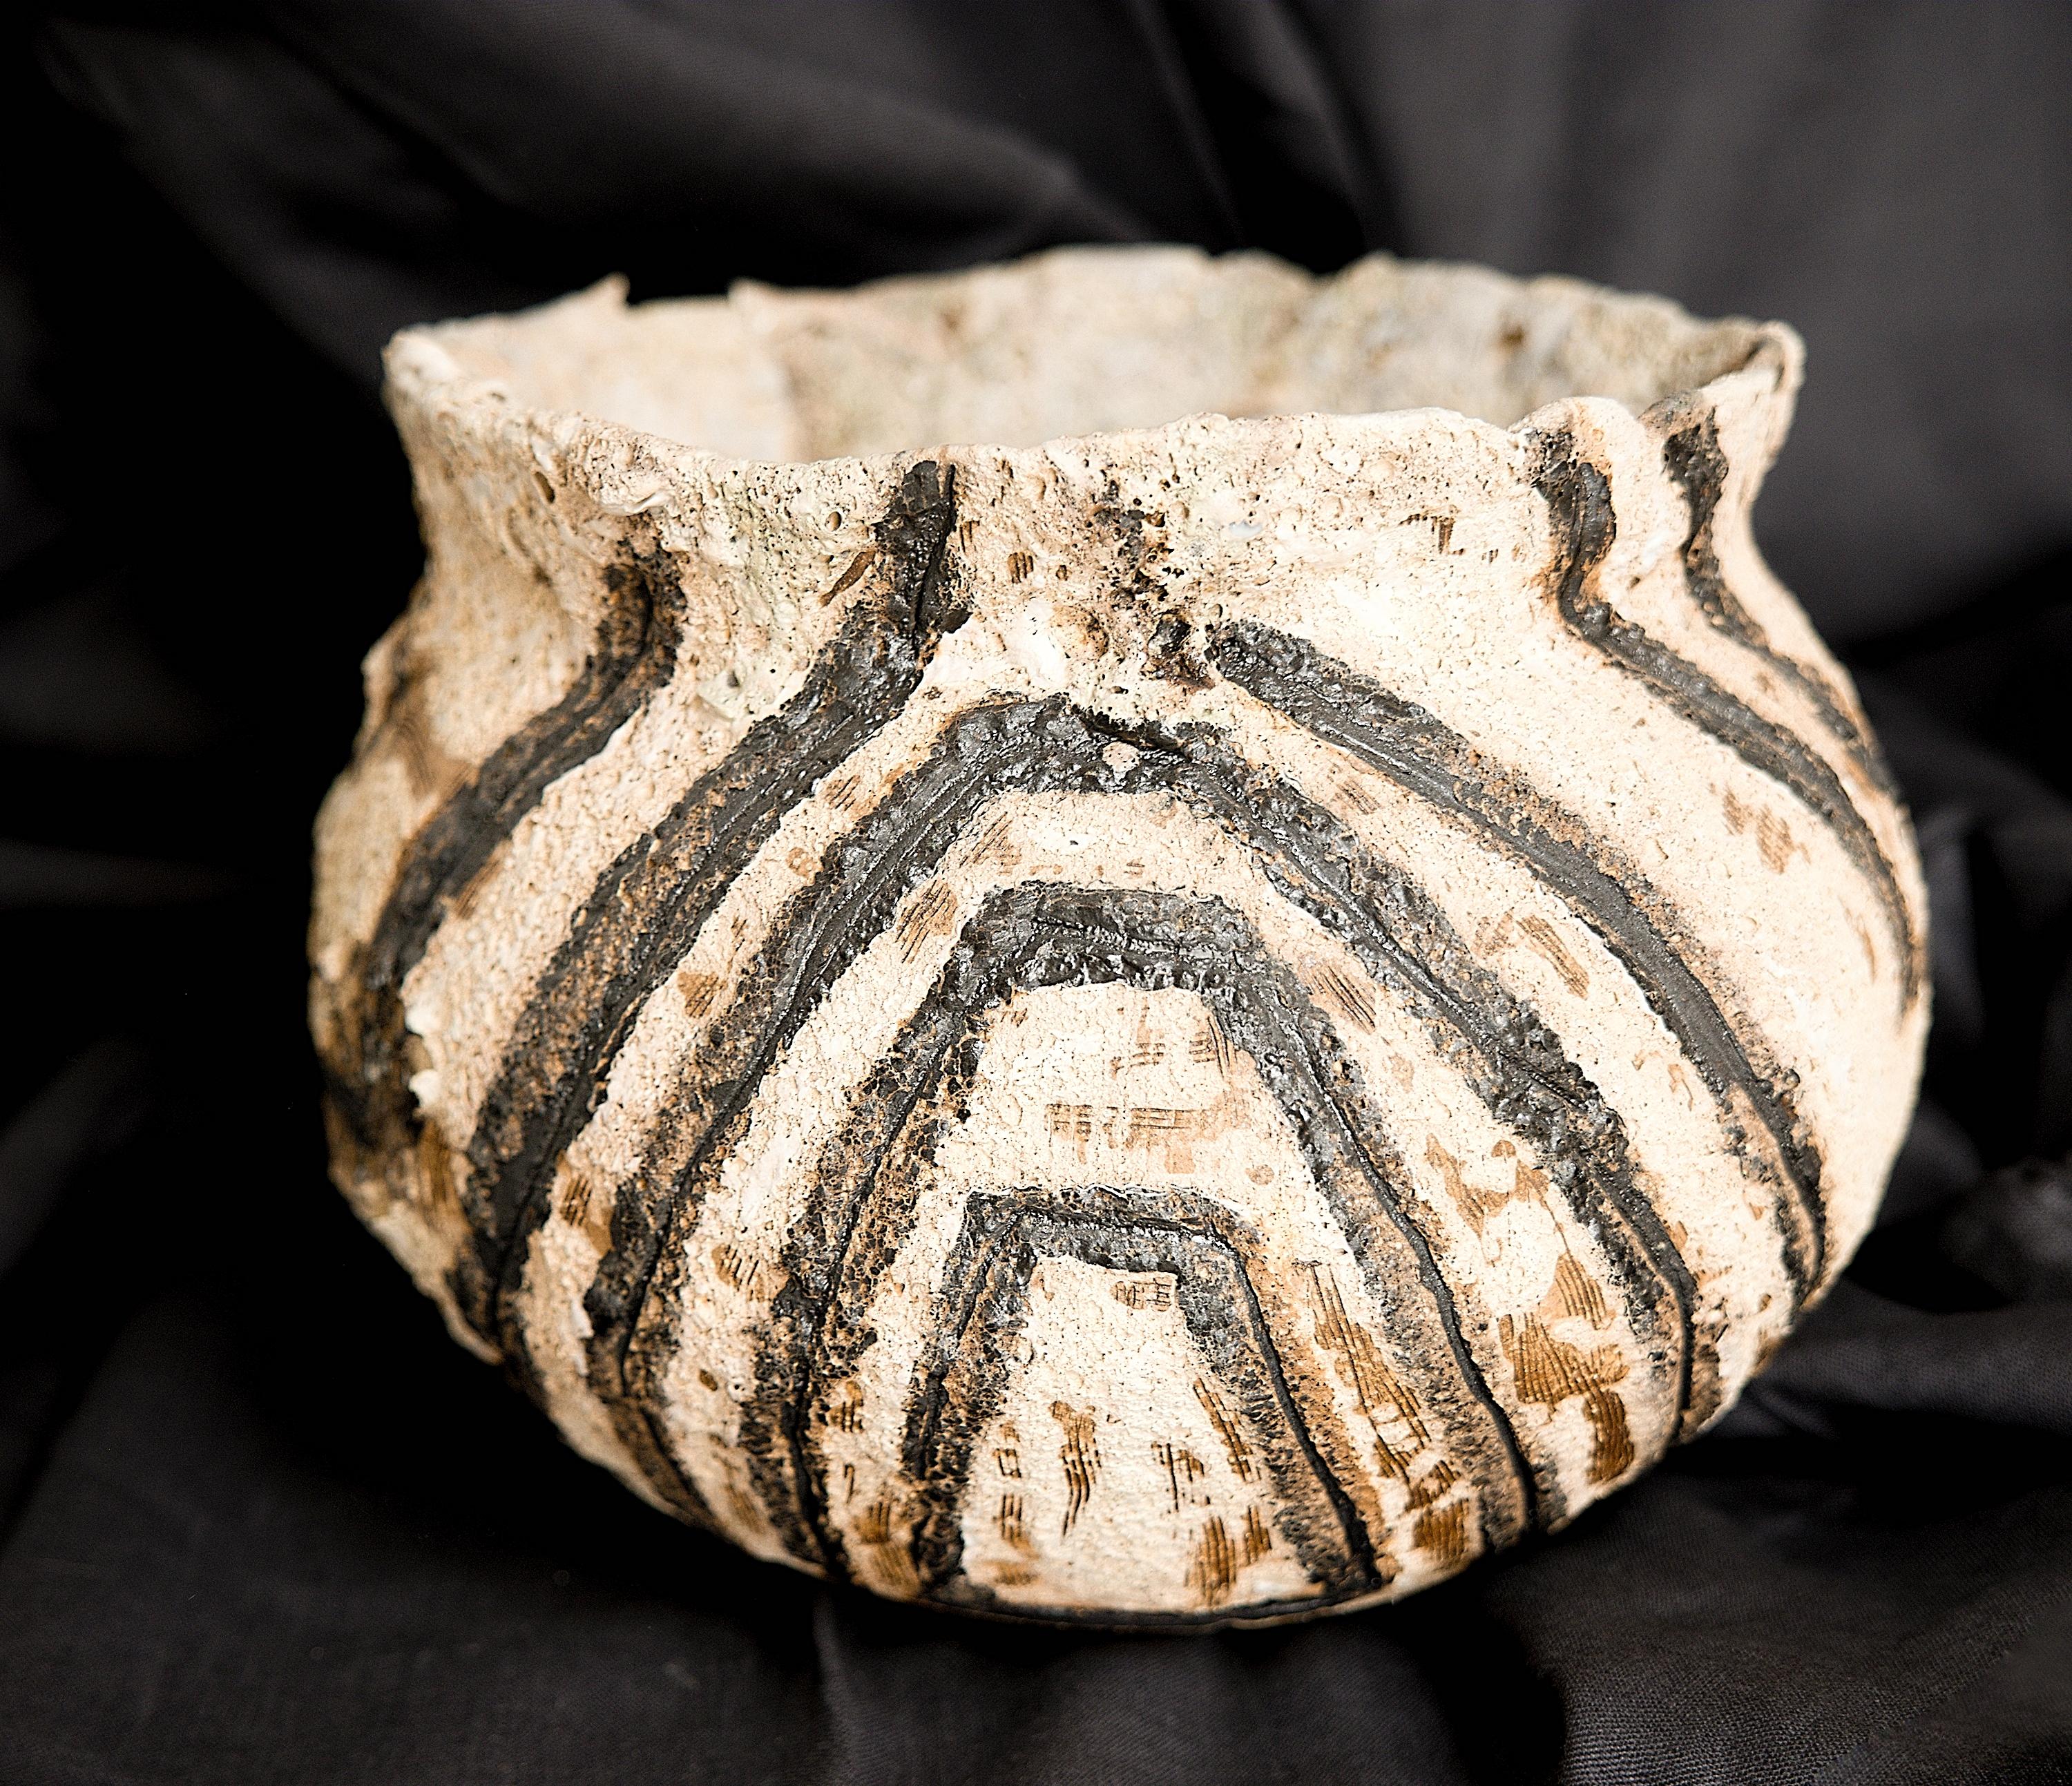 Cette série s'inspire des anciennes poteries Jomon, japonaises et Mehrgarh ; 

Ils utilisent souvent les techniques bien connues du Yakishime, où l'argile n'est pas nécessairement émaillée.

Les surfaces sont peintes à la main et uniques en leur